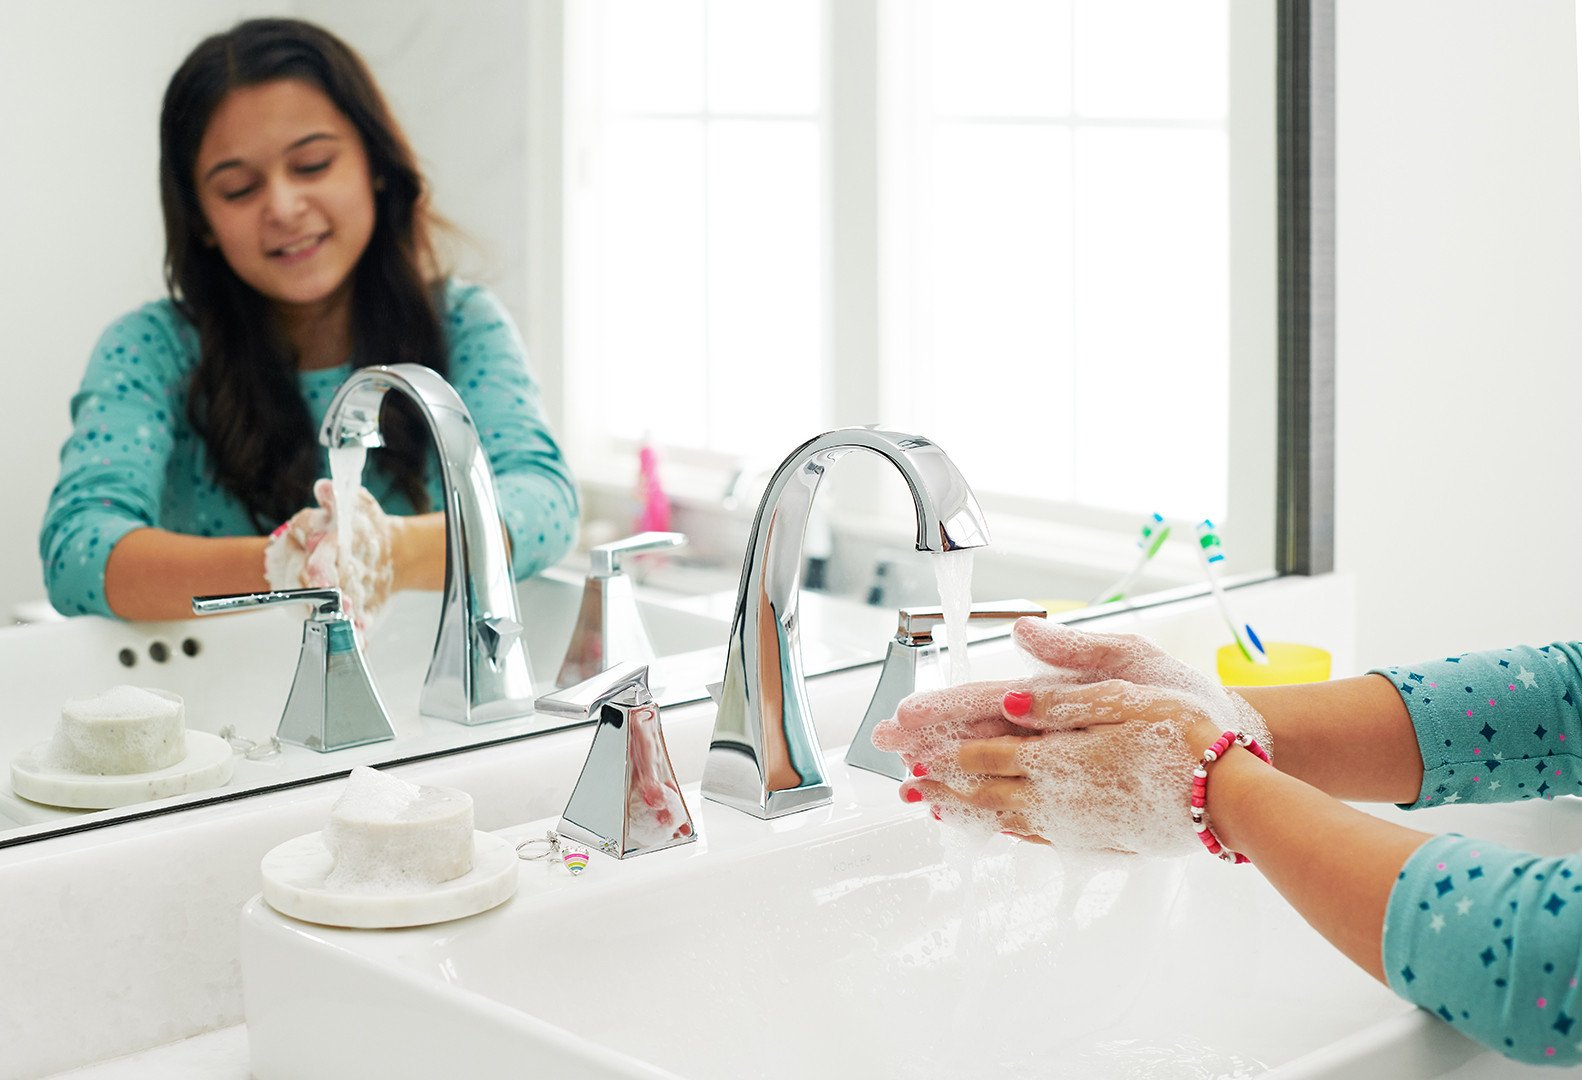 Hand washing lifestyle image